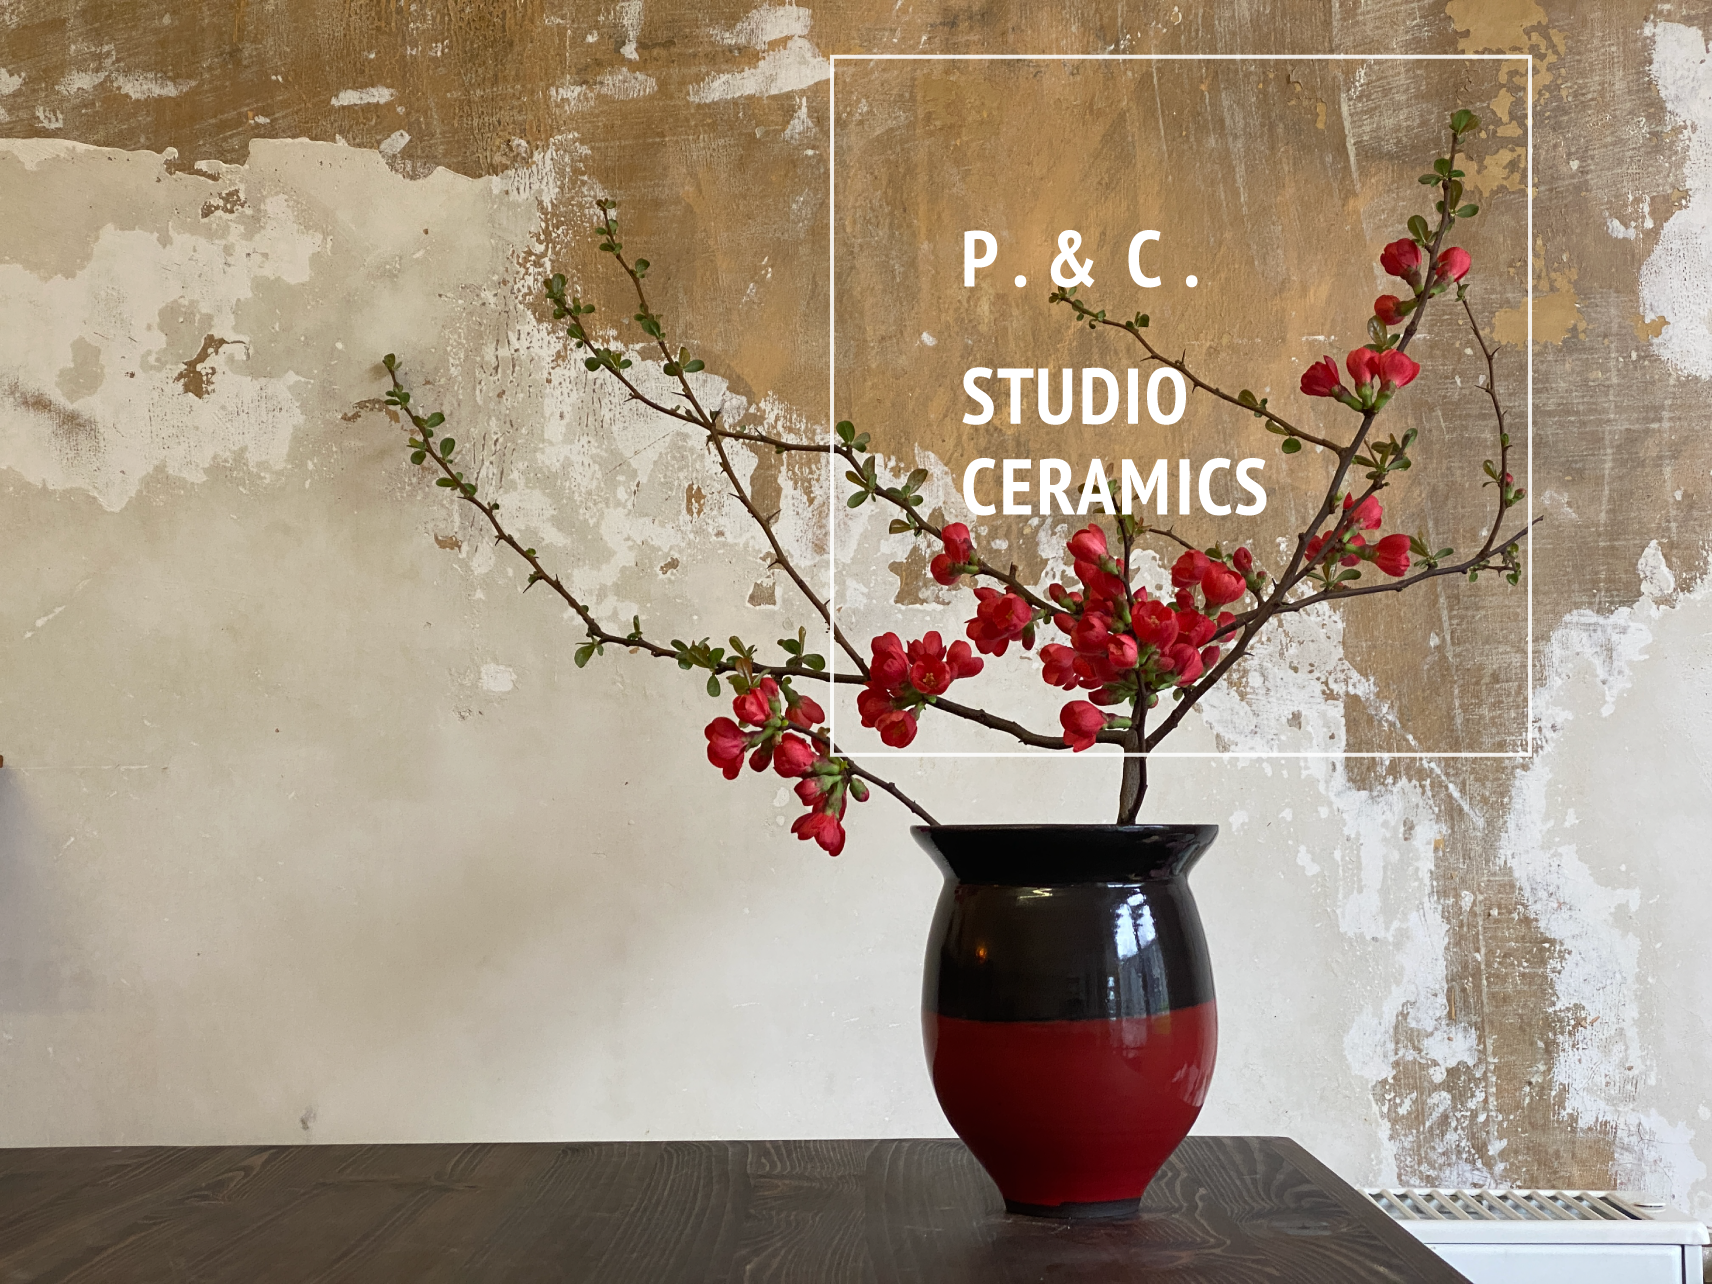 Vase in Dunkelbraun und Rot mit einem Ast und dunkelroten Blüten und darüber das Logo vom Ceramic-Studio P. & C. STUDIO CERAMICS.